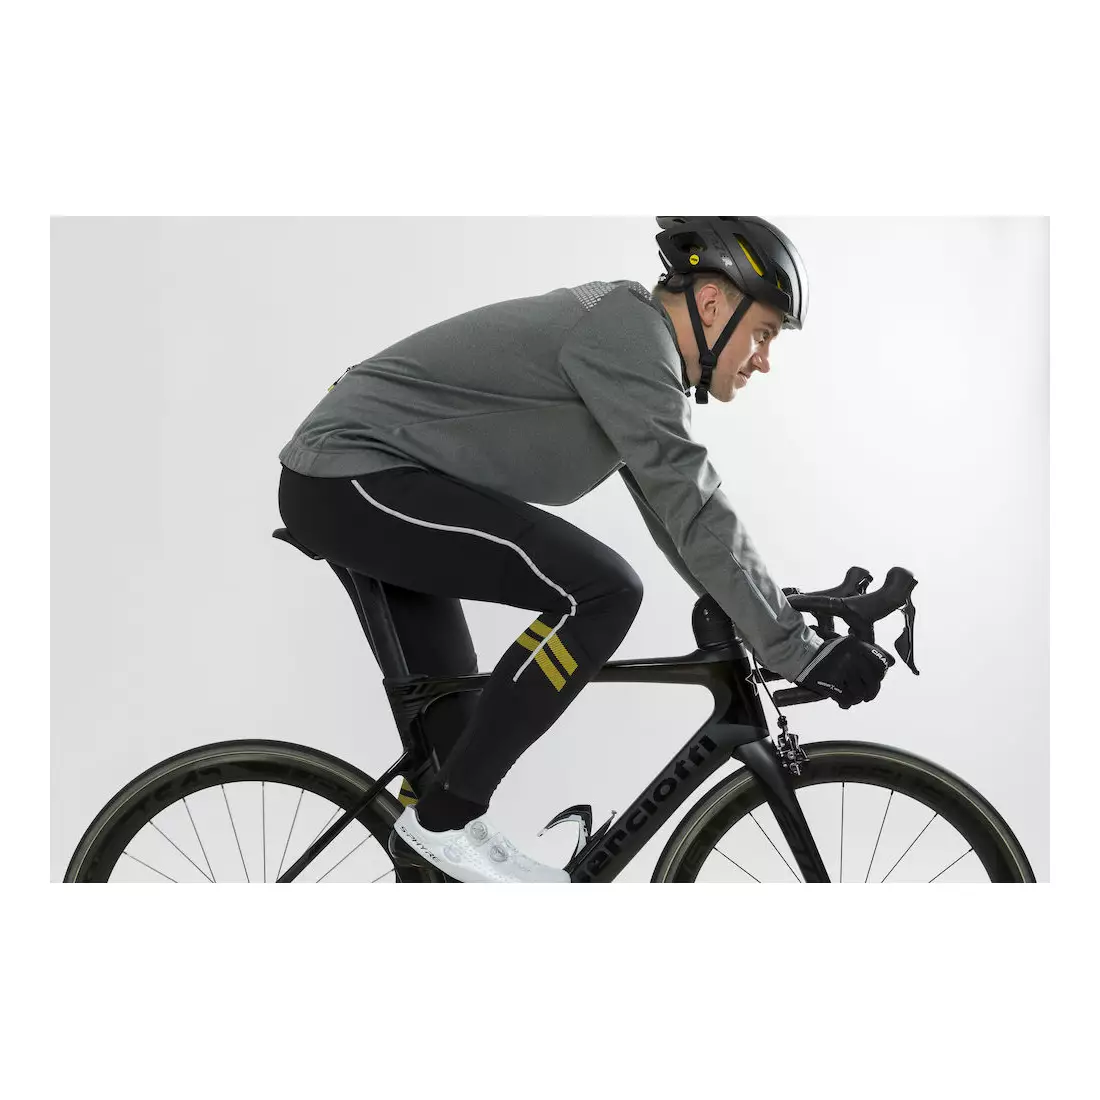 CRAFT RIME zimní cyklistická bunda, šedá 1905452-975926